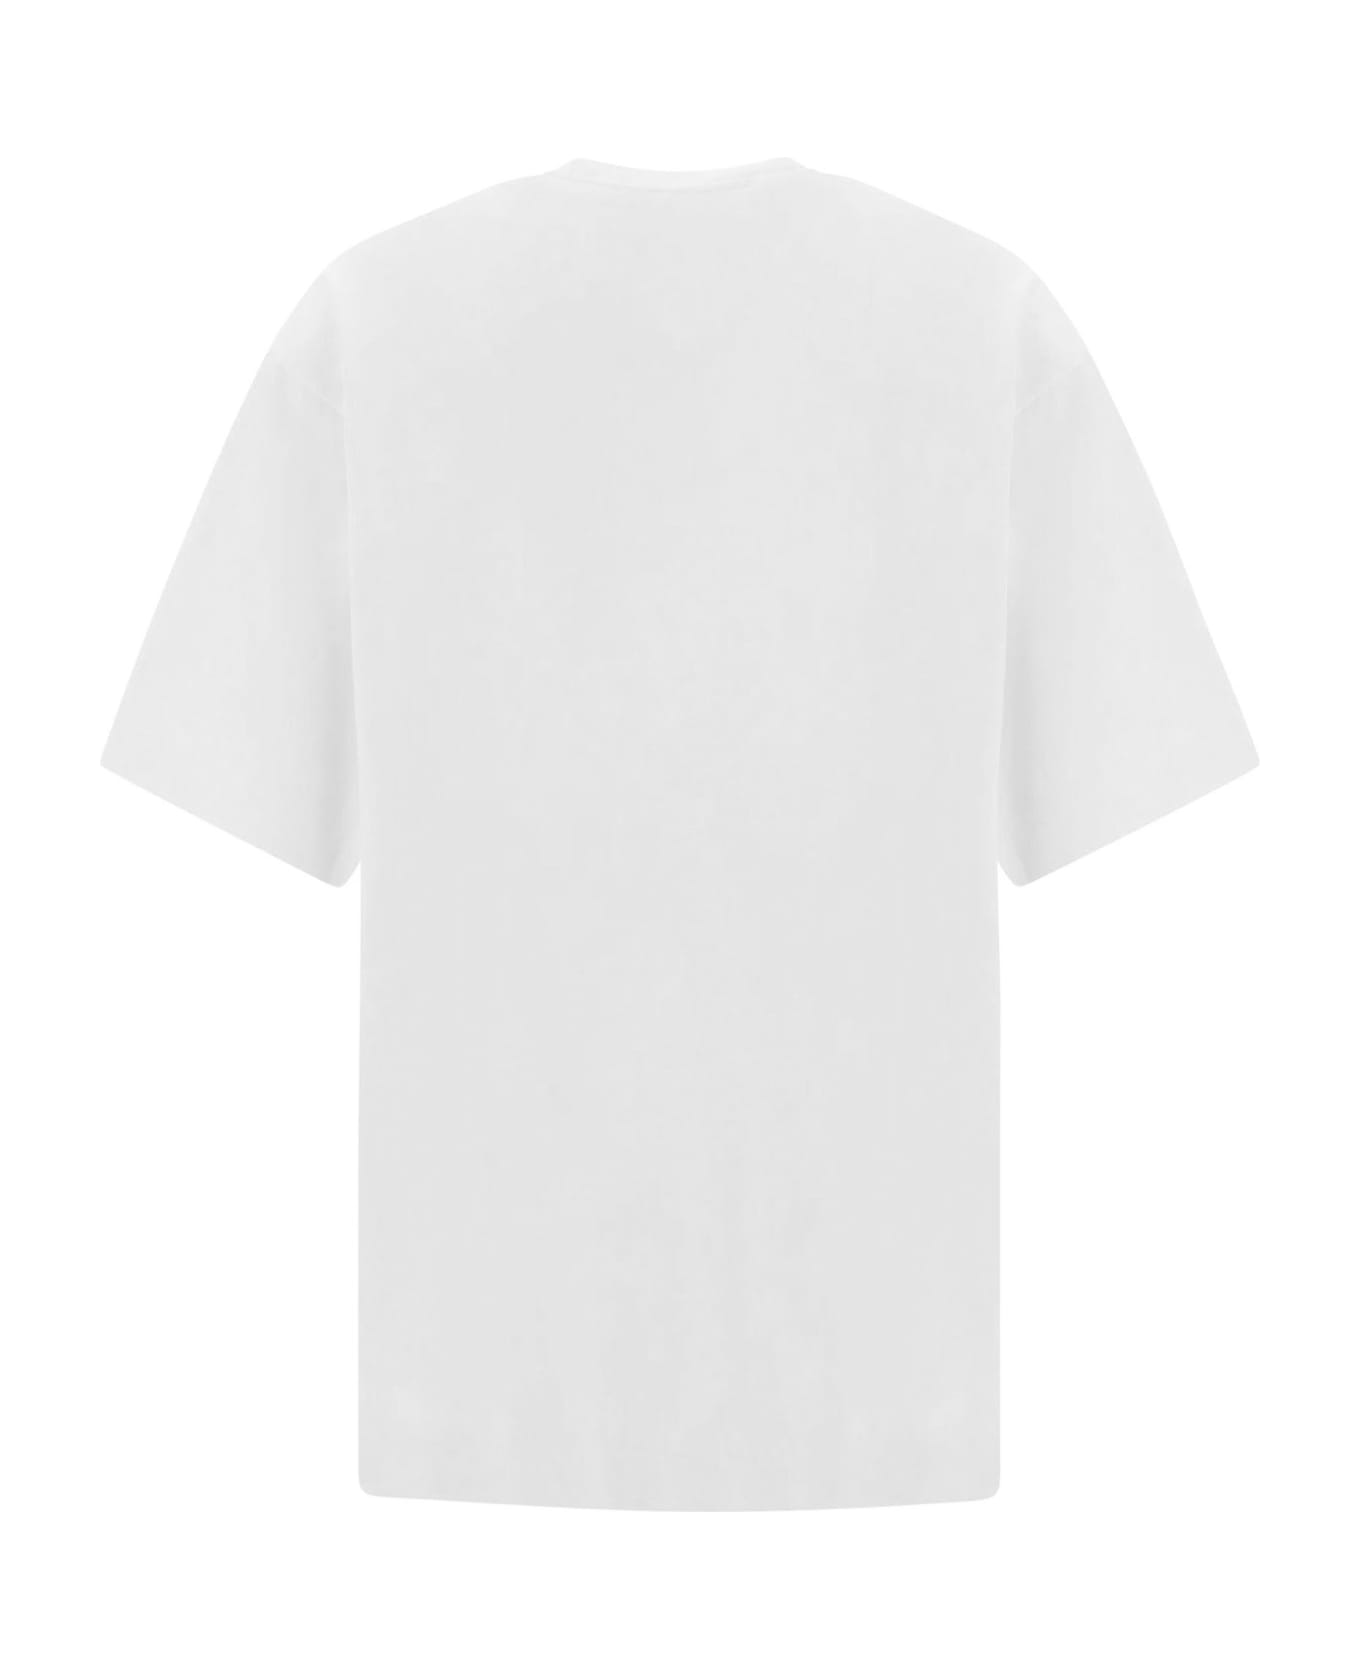 Axel Arigato T-shirts And Polos White - White